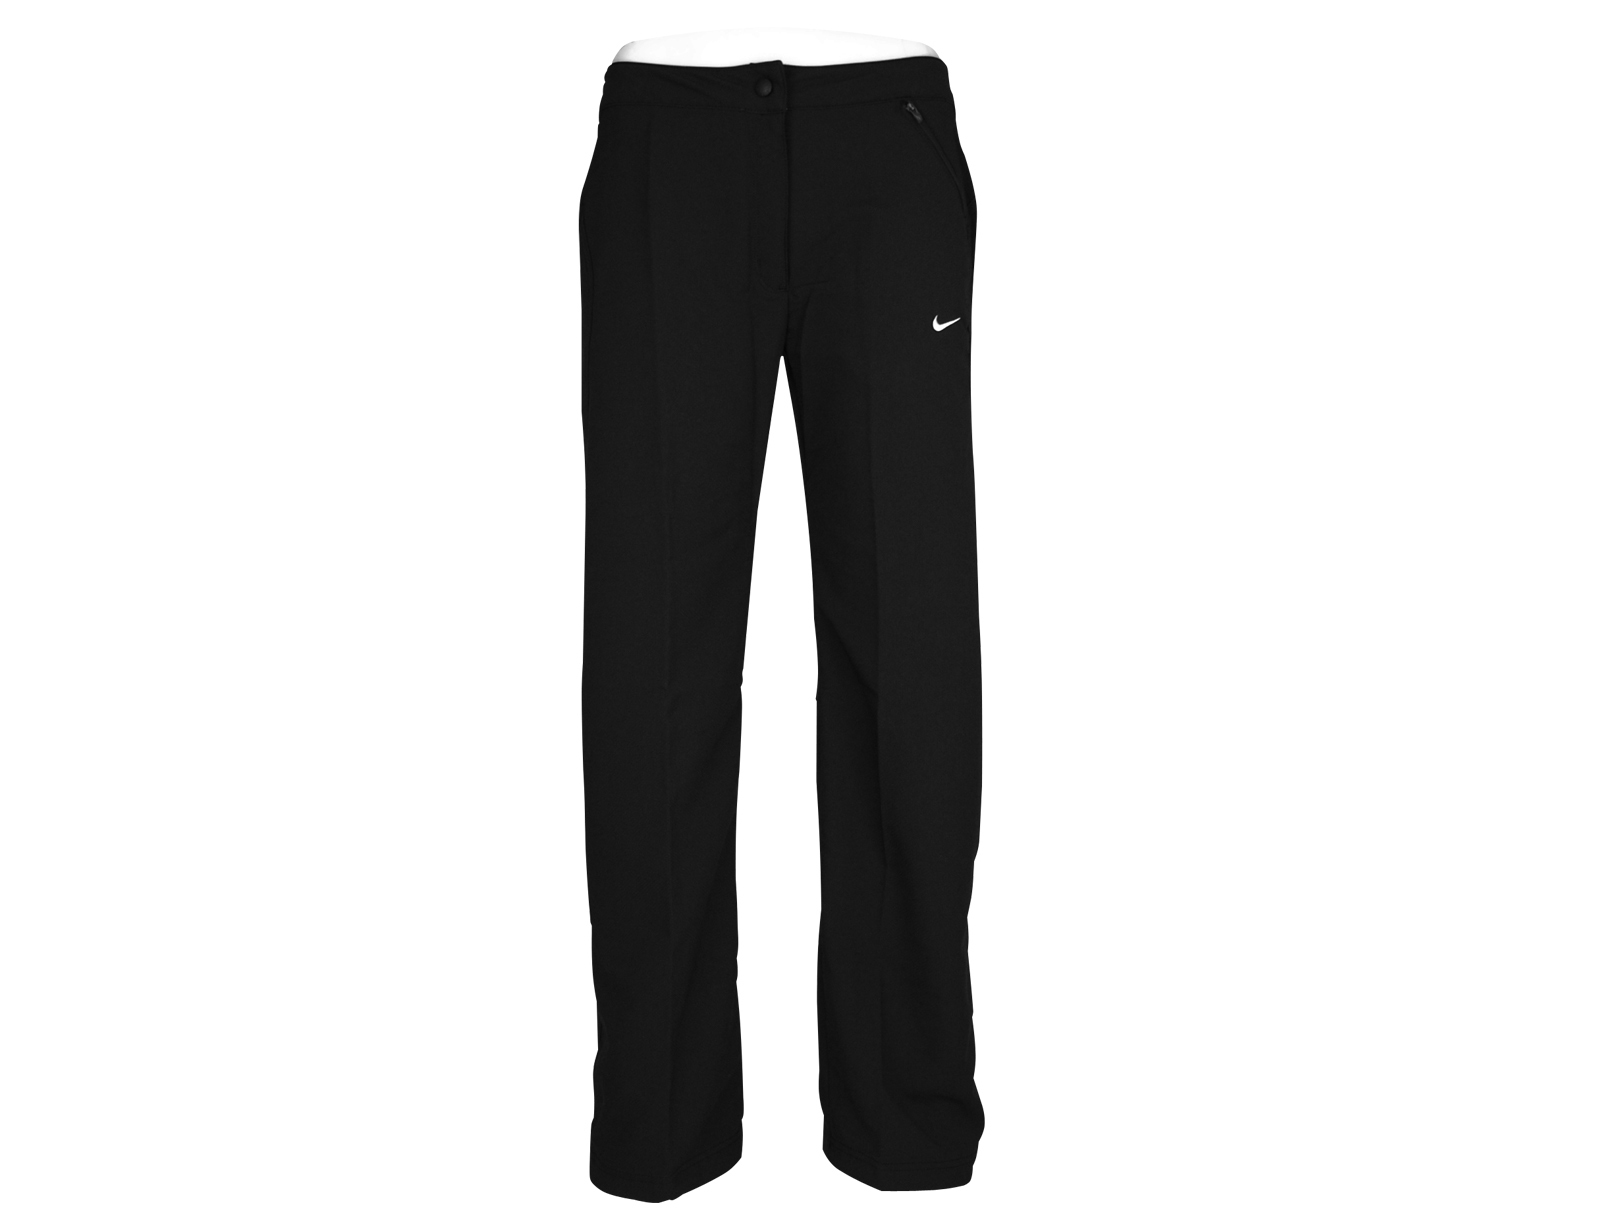 Avantisport - Nike - All Sports Woven Pants - Vrouwen Lange Sport Broek